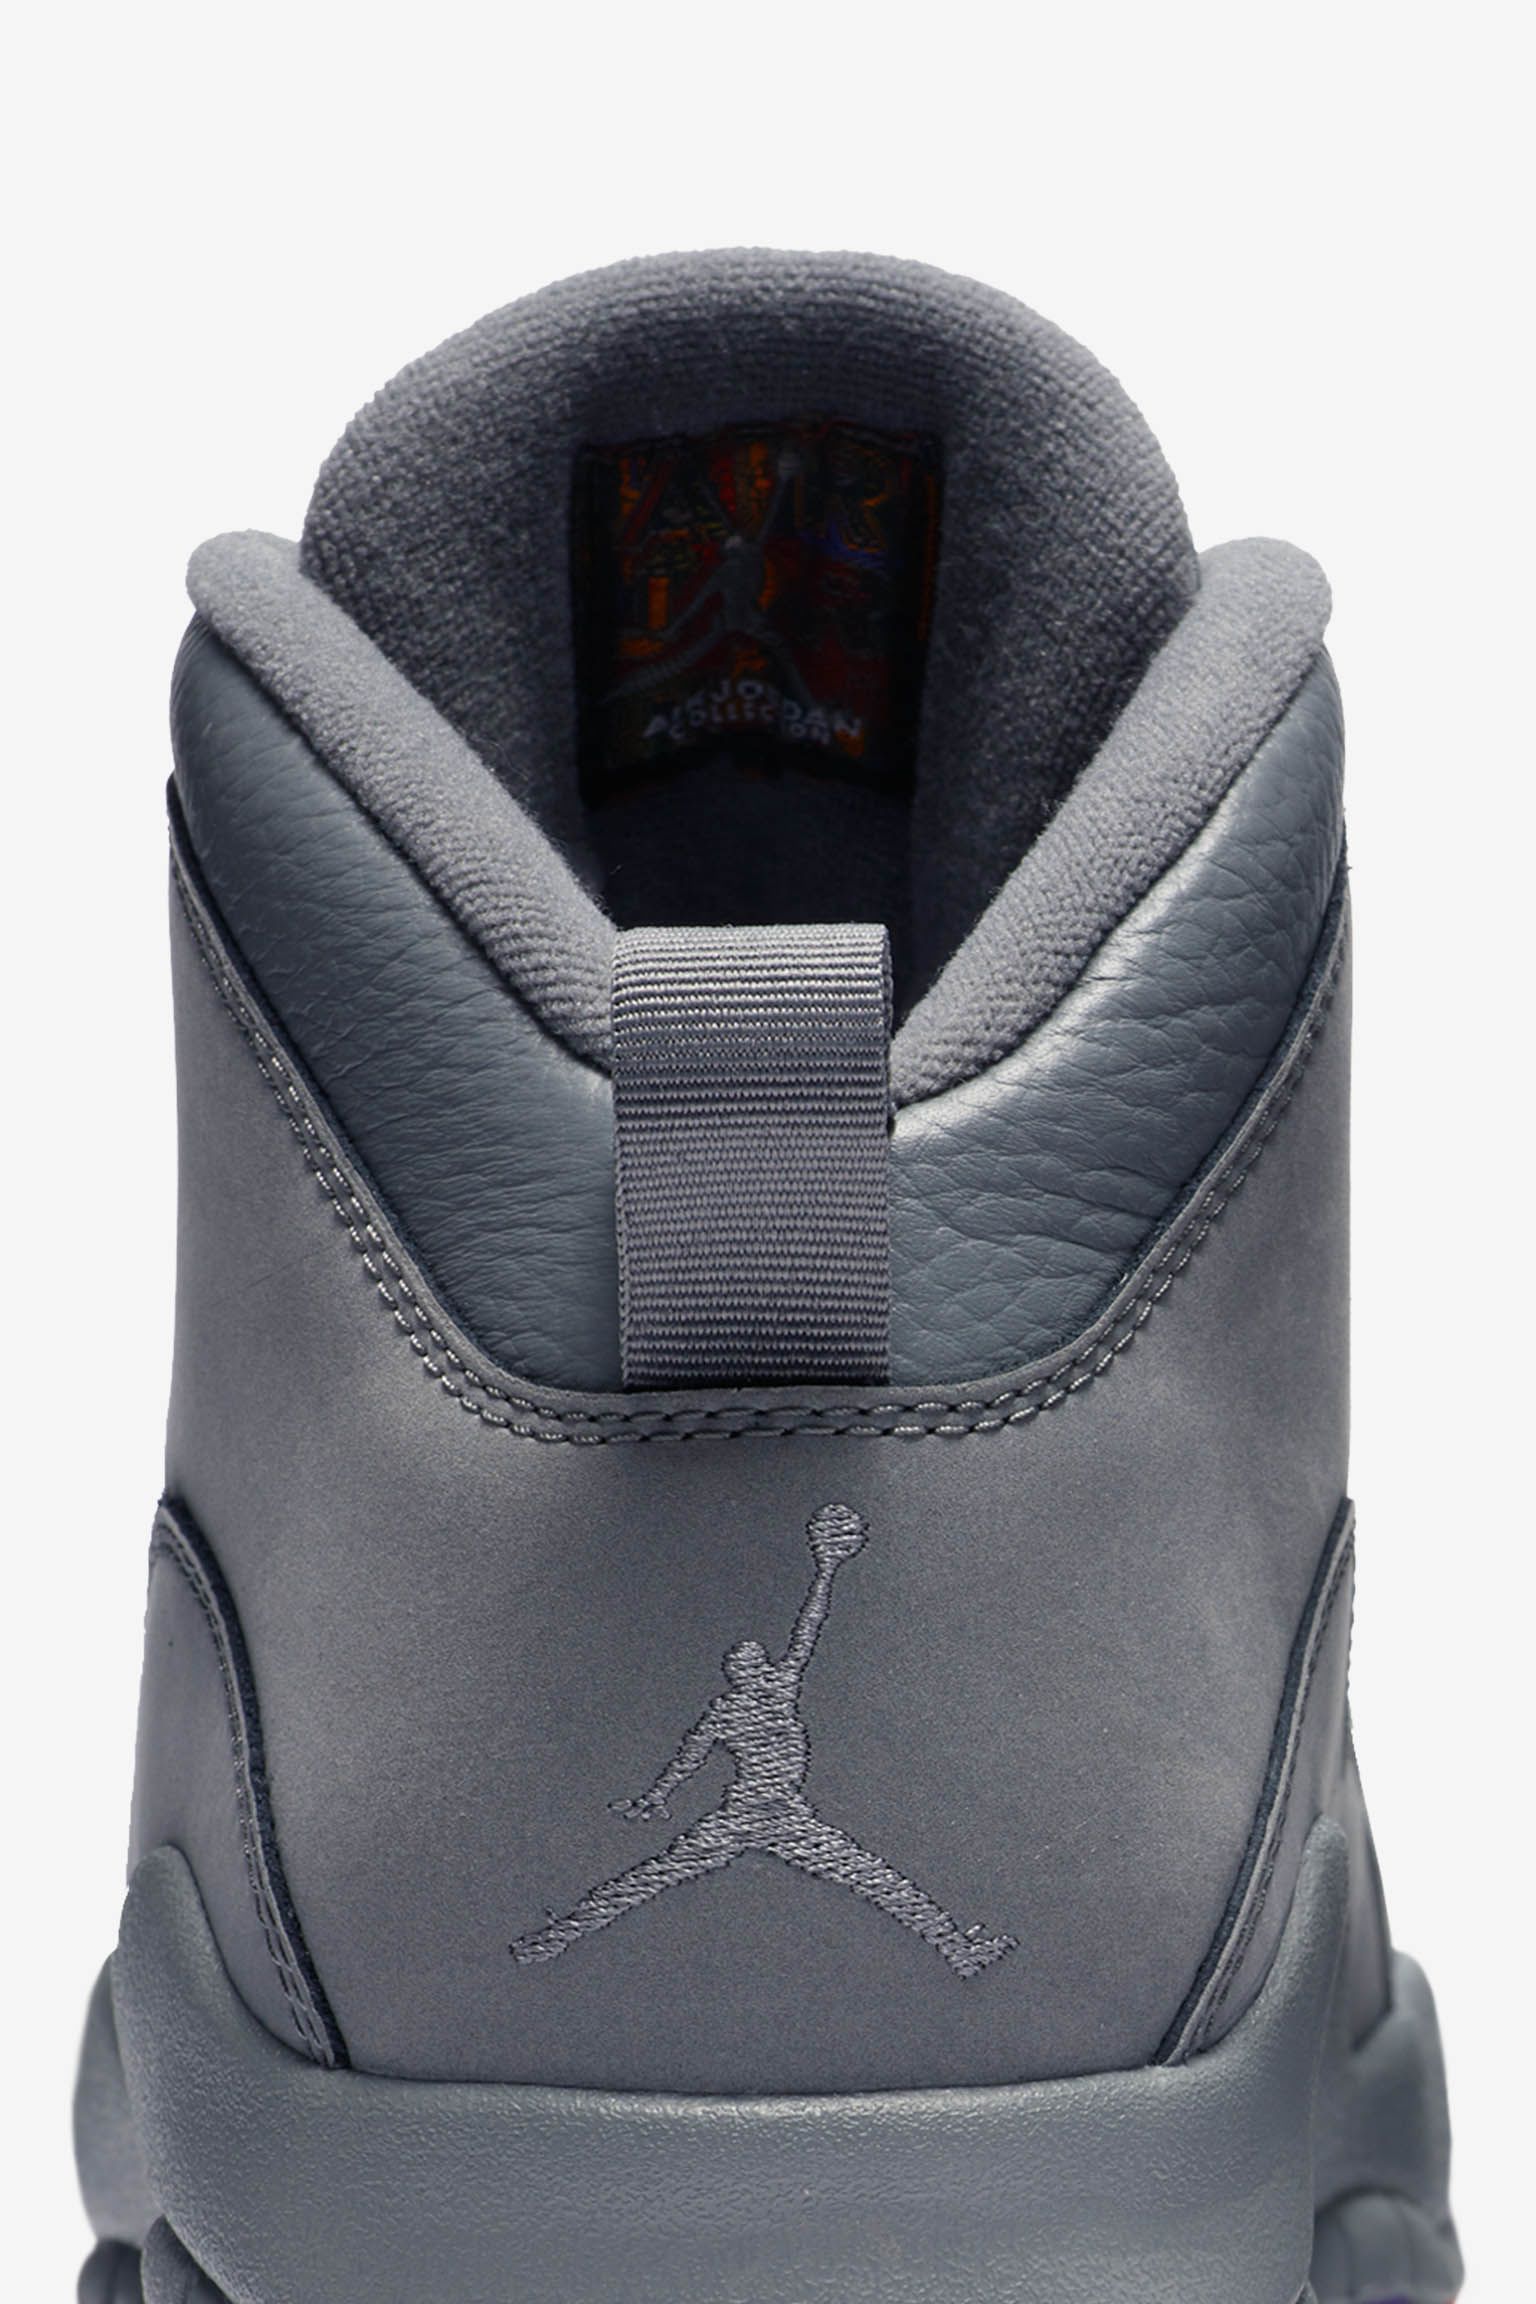 Air Jordan 'Cool Grey' Release Date. Nike SNKRS